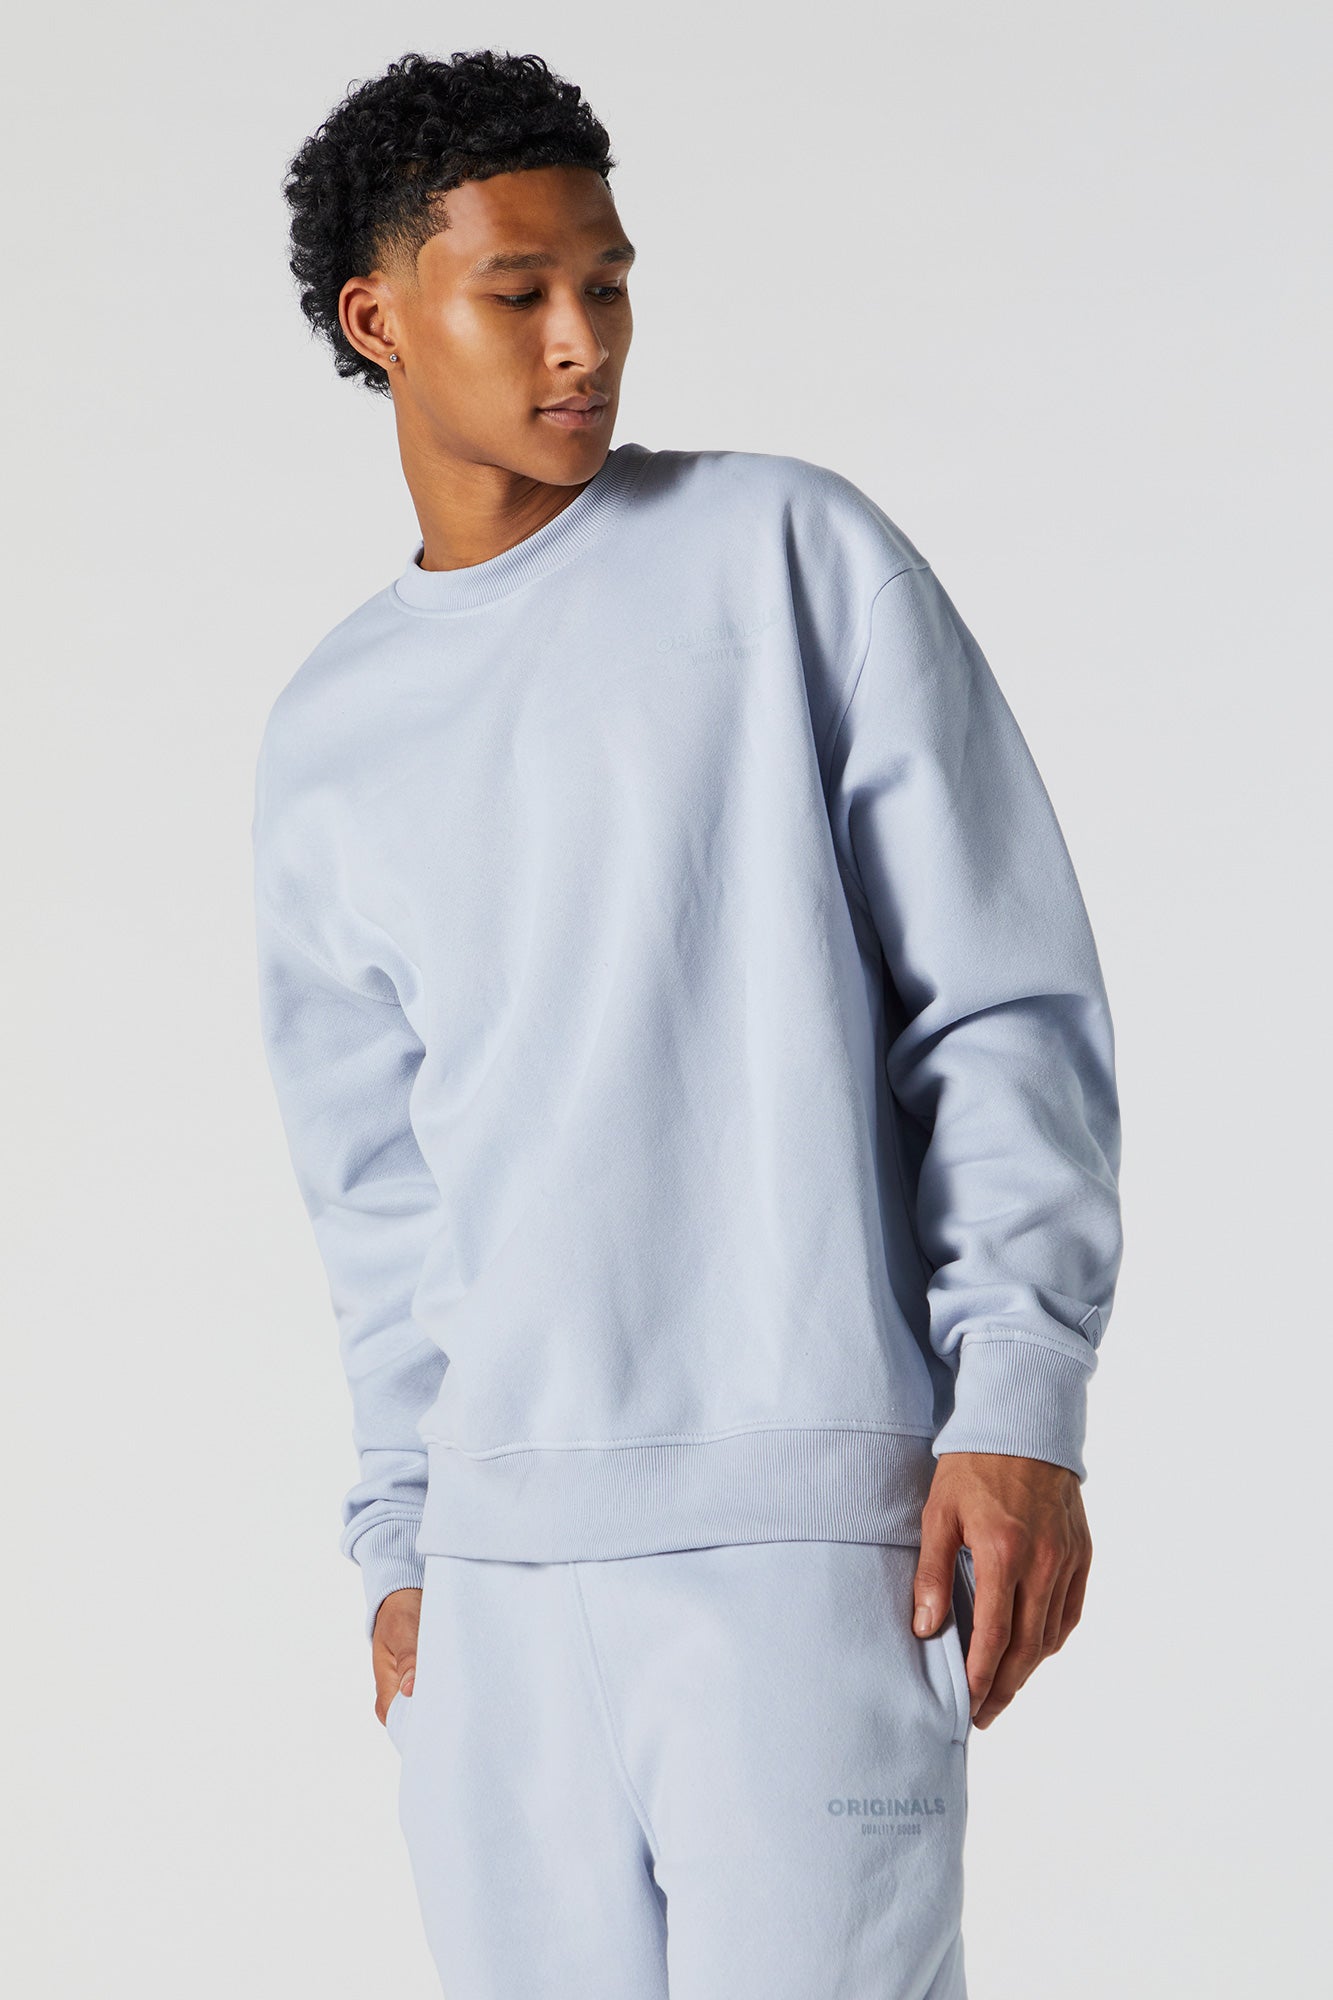 Originals Fleece Sweatshirt